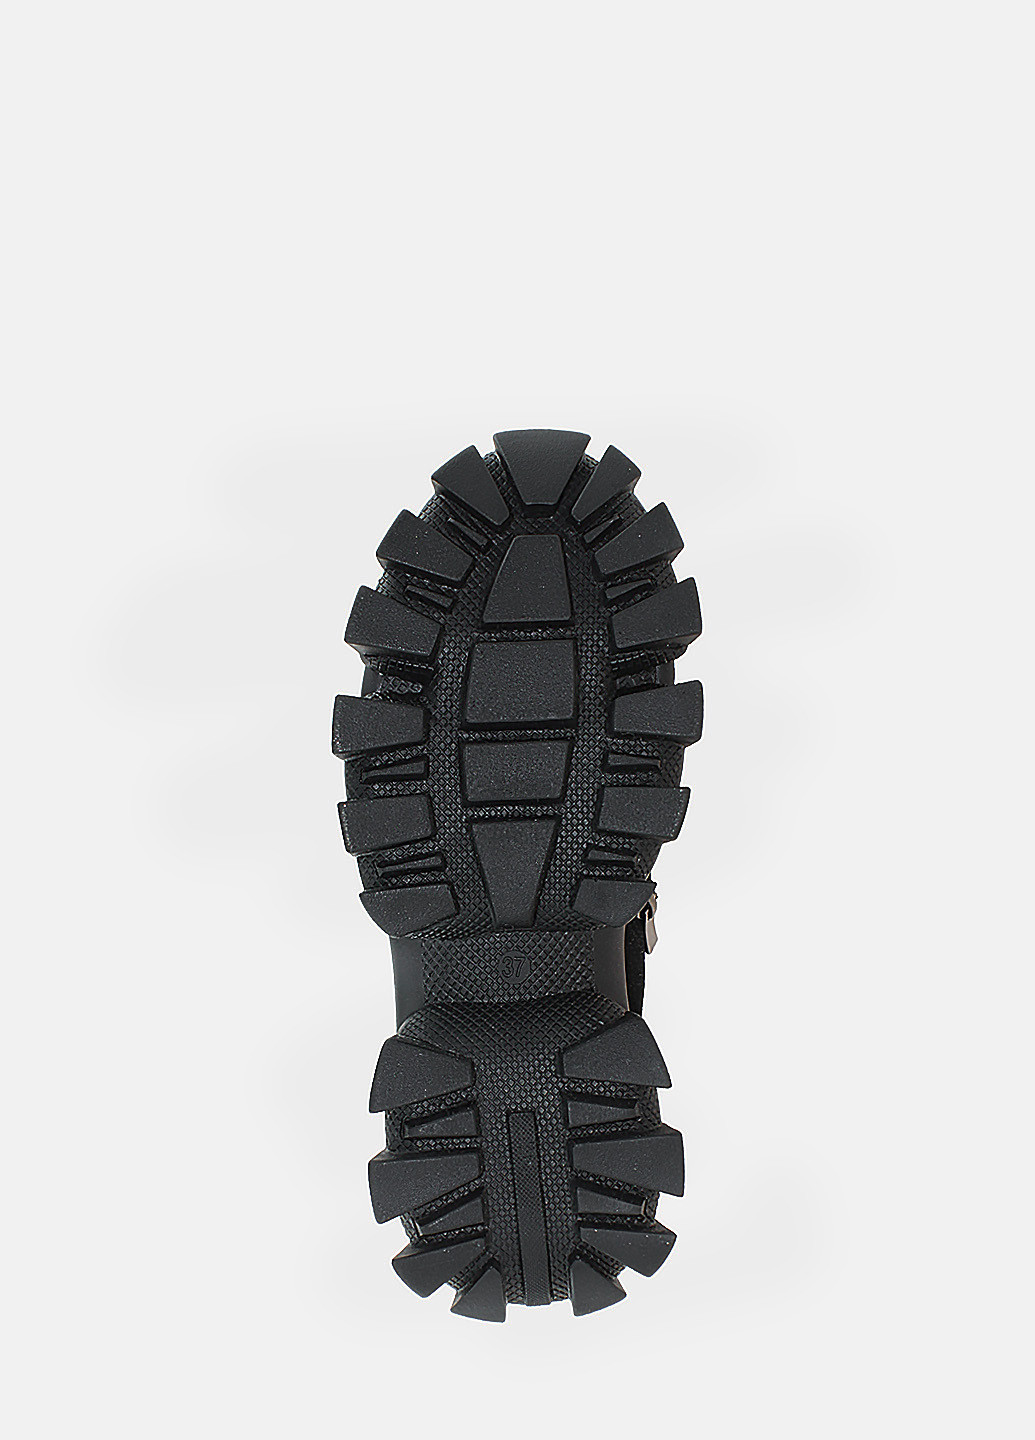 Зимние ботинки reб928 черный Eleni из натуральной замши